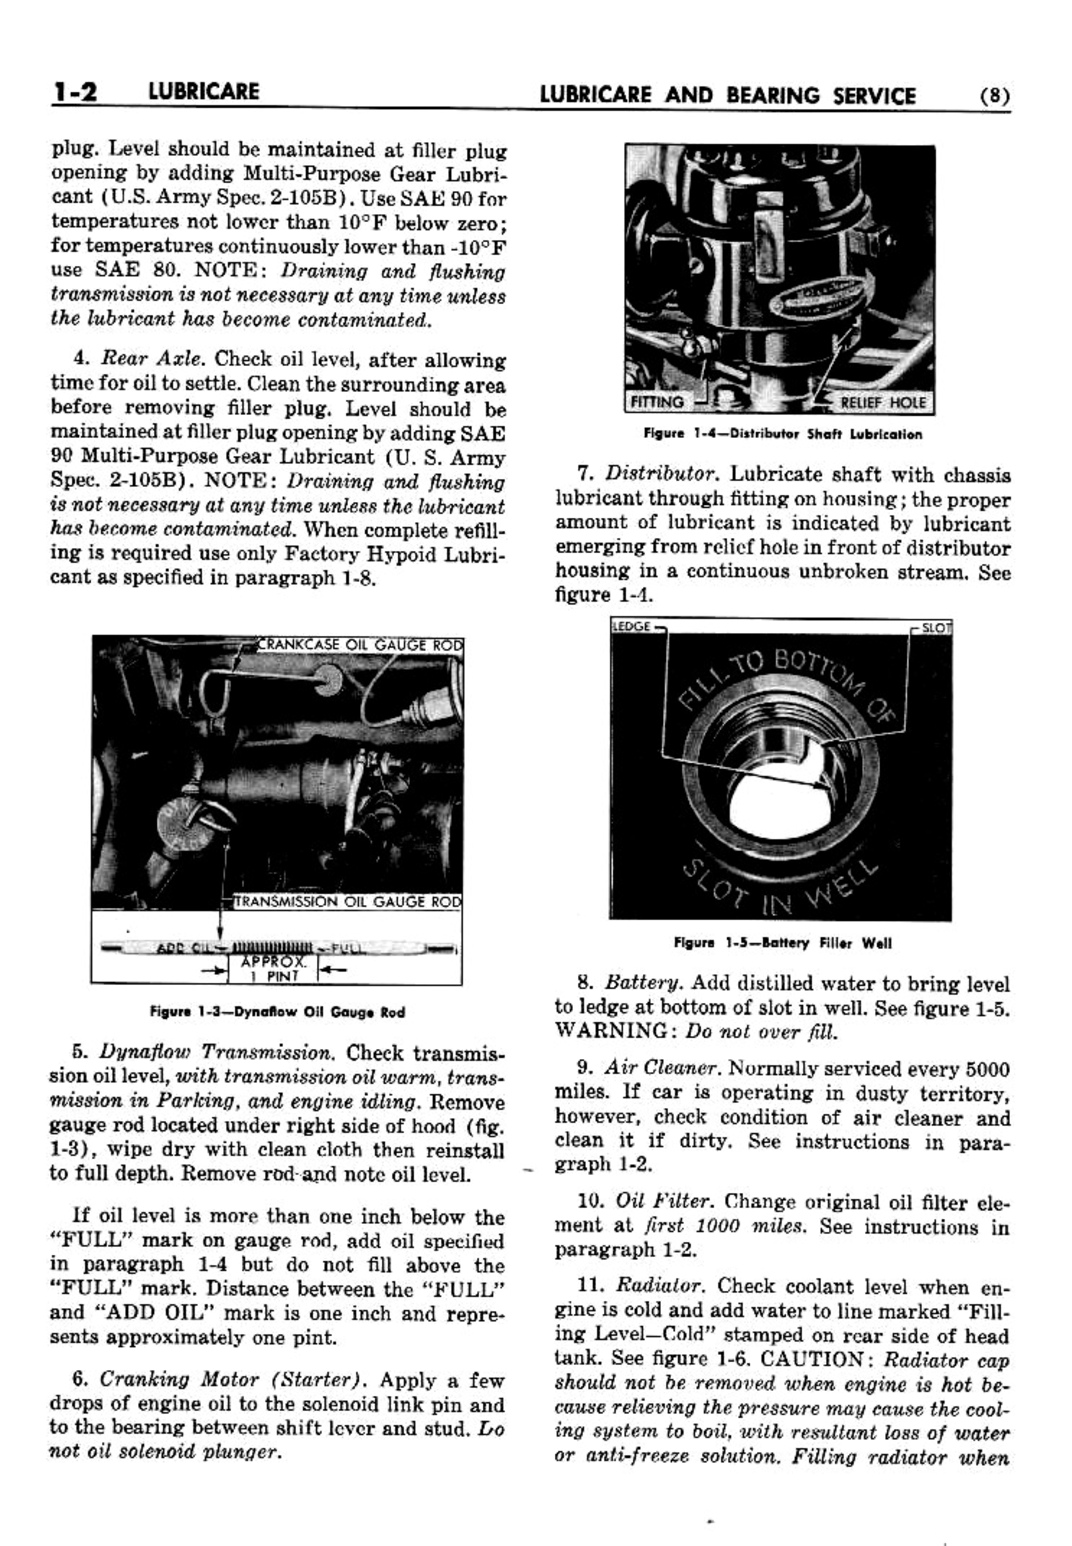 n_02 1952 Buick Shop Manual - Lubricare-002-002.jpg